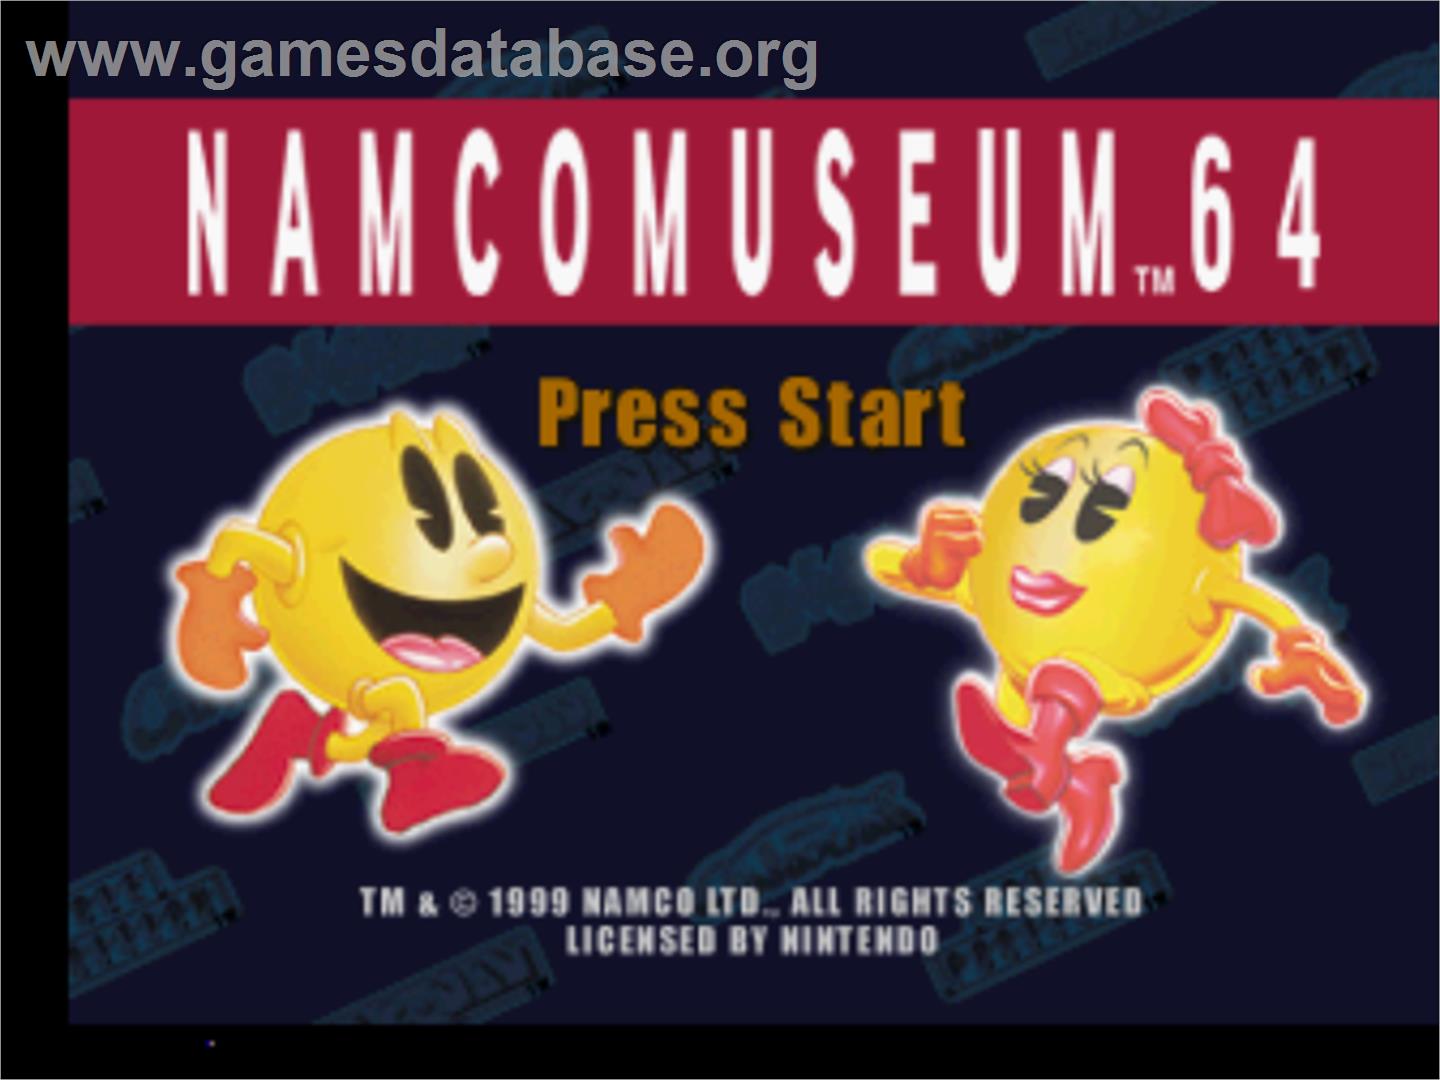 Namco Museum 64 - Nintendo N64 - Artwork - Title Screen